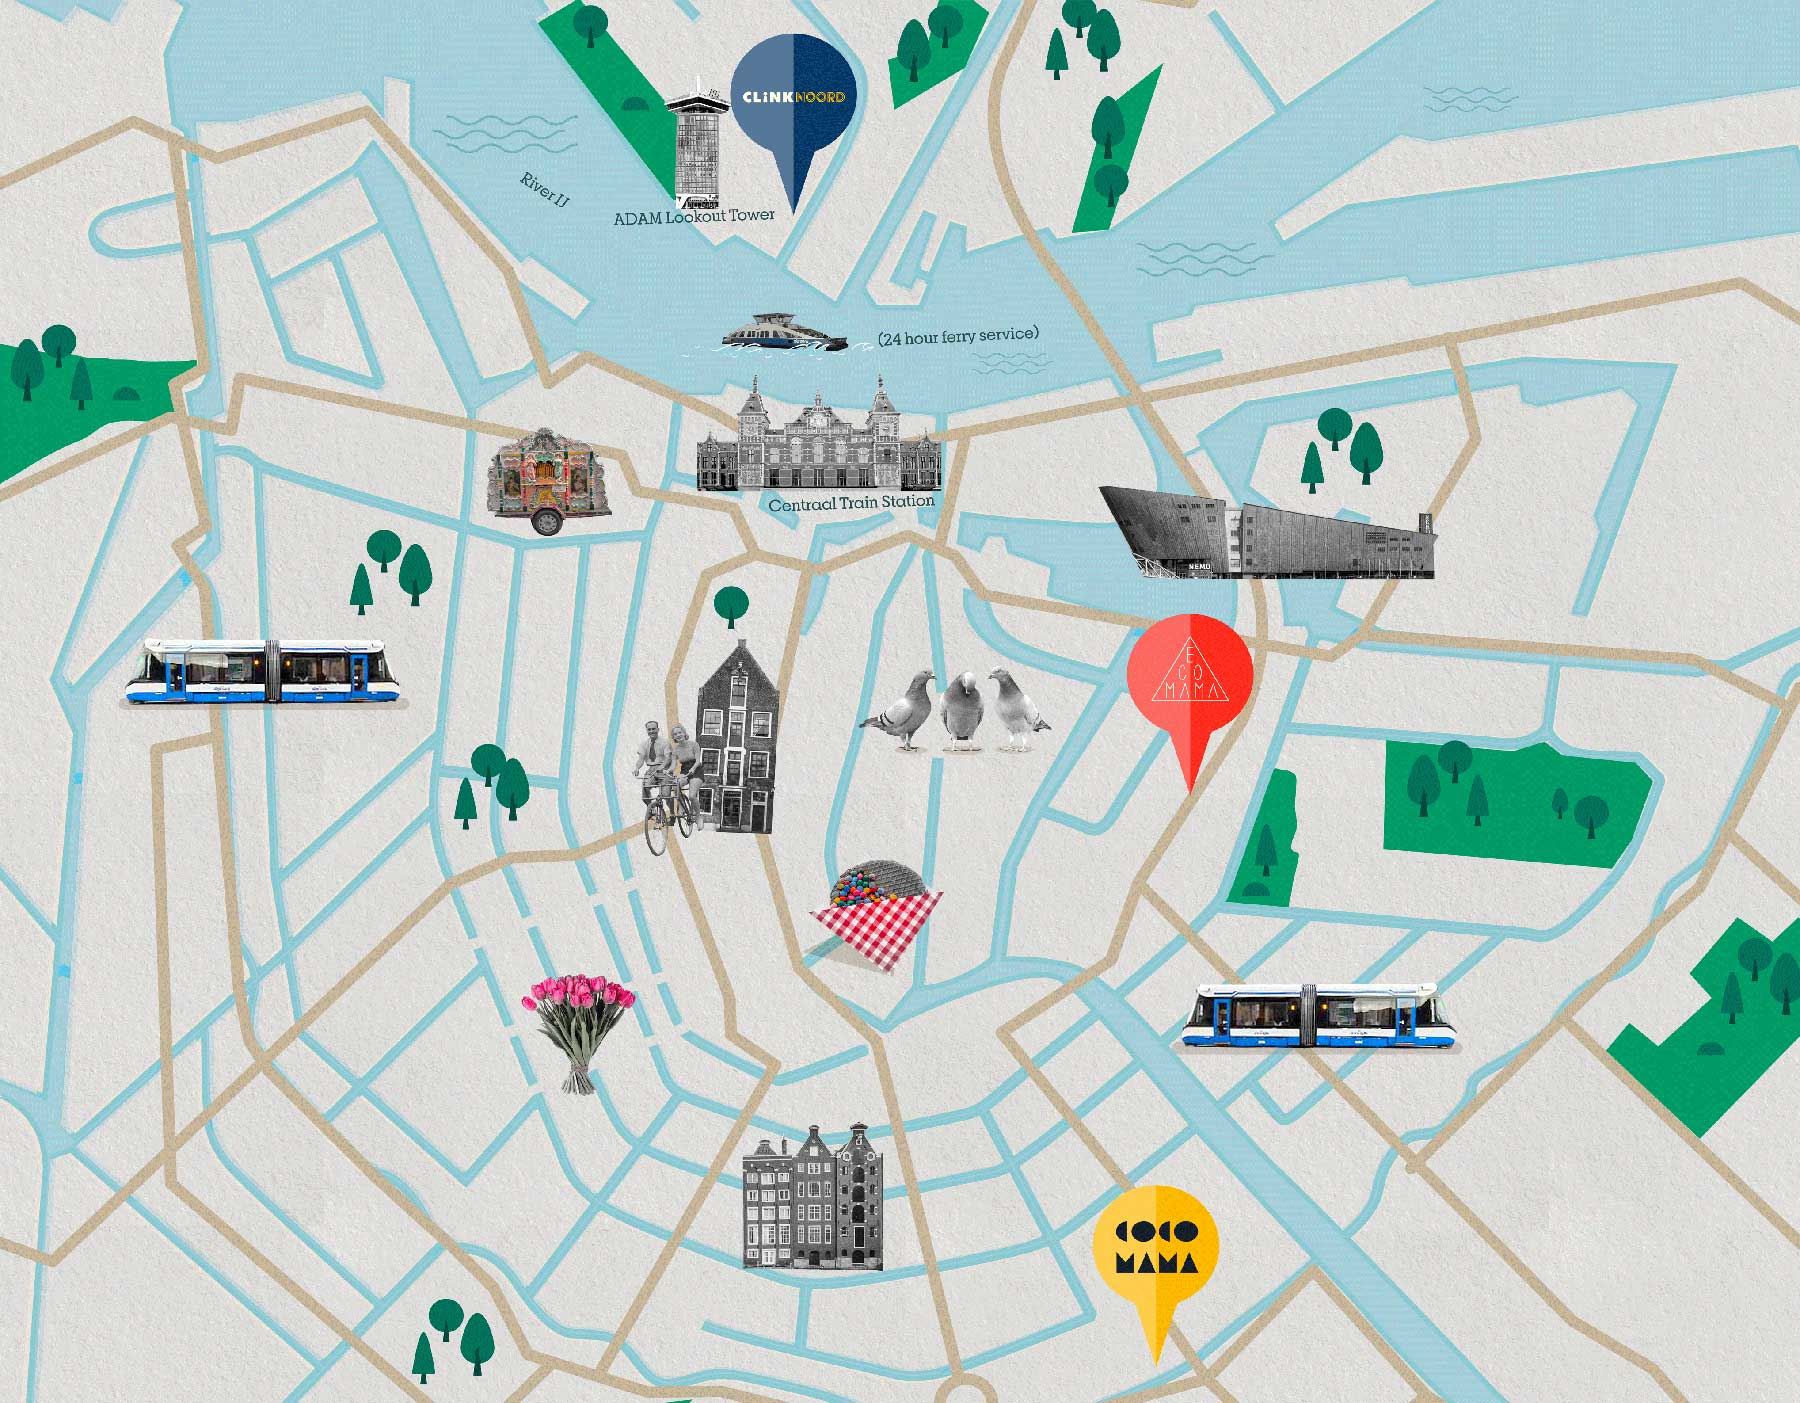 Mappa della città di Amsterdam con ClinkNOORD, Ecomama, Cocomama e attrazioni turistiche